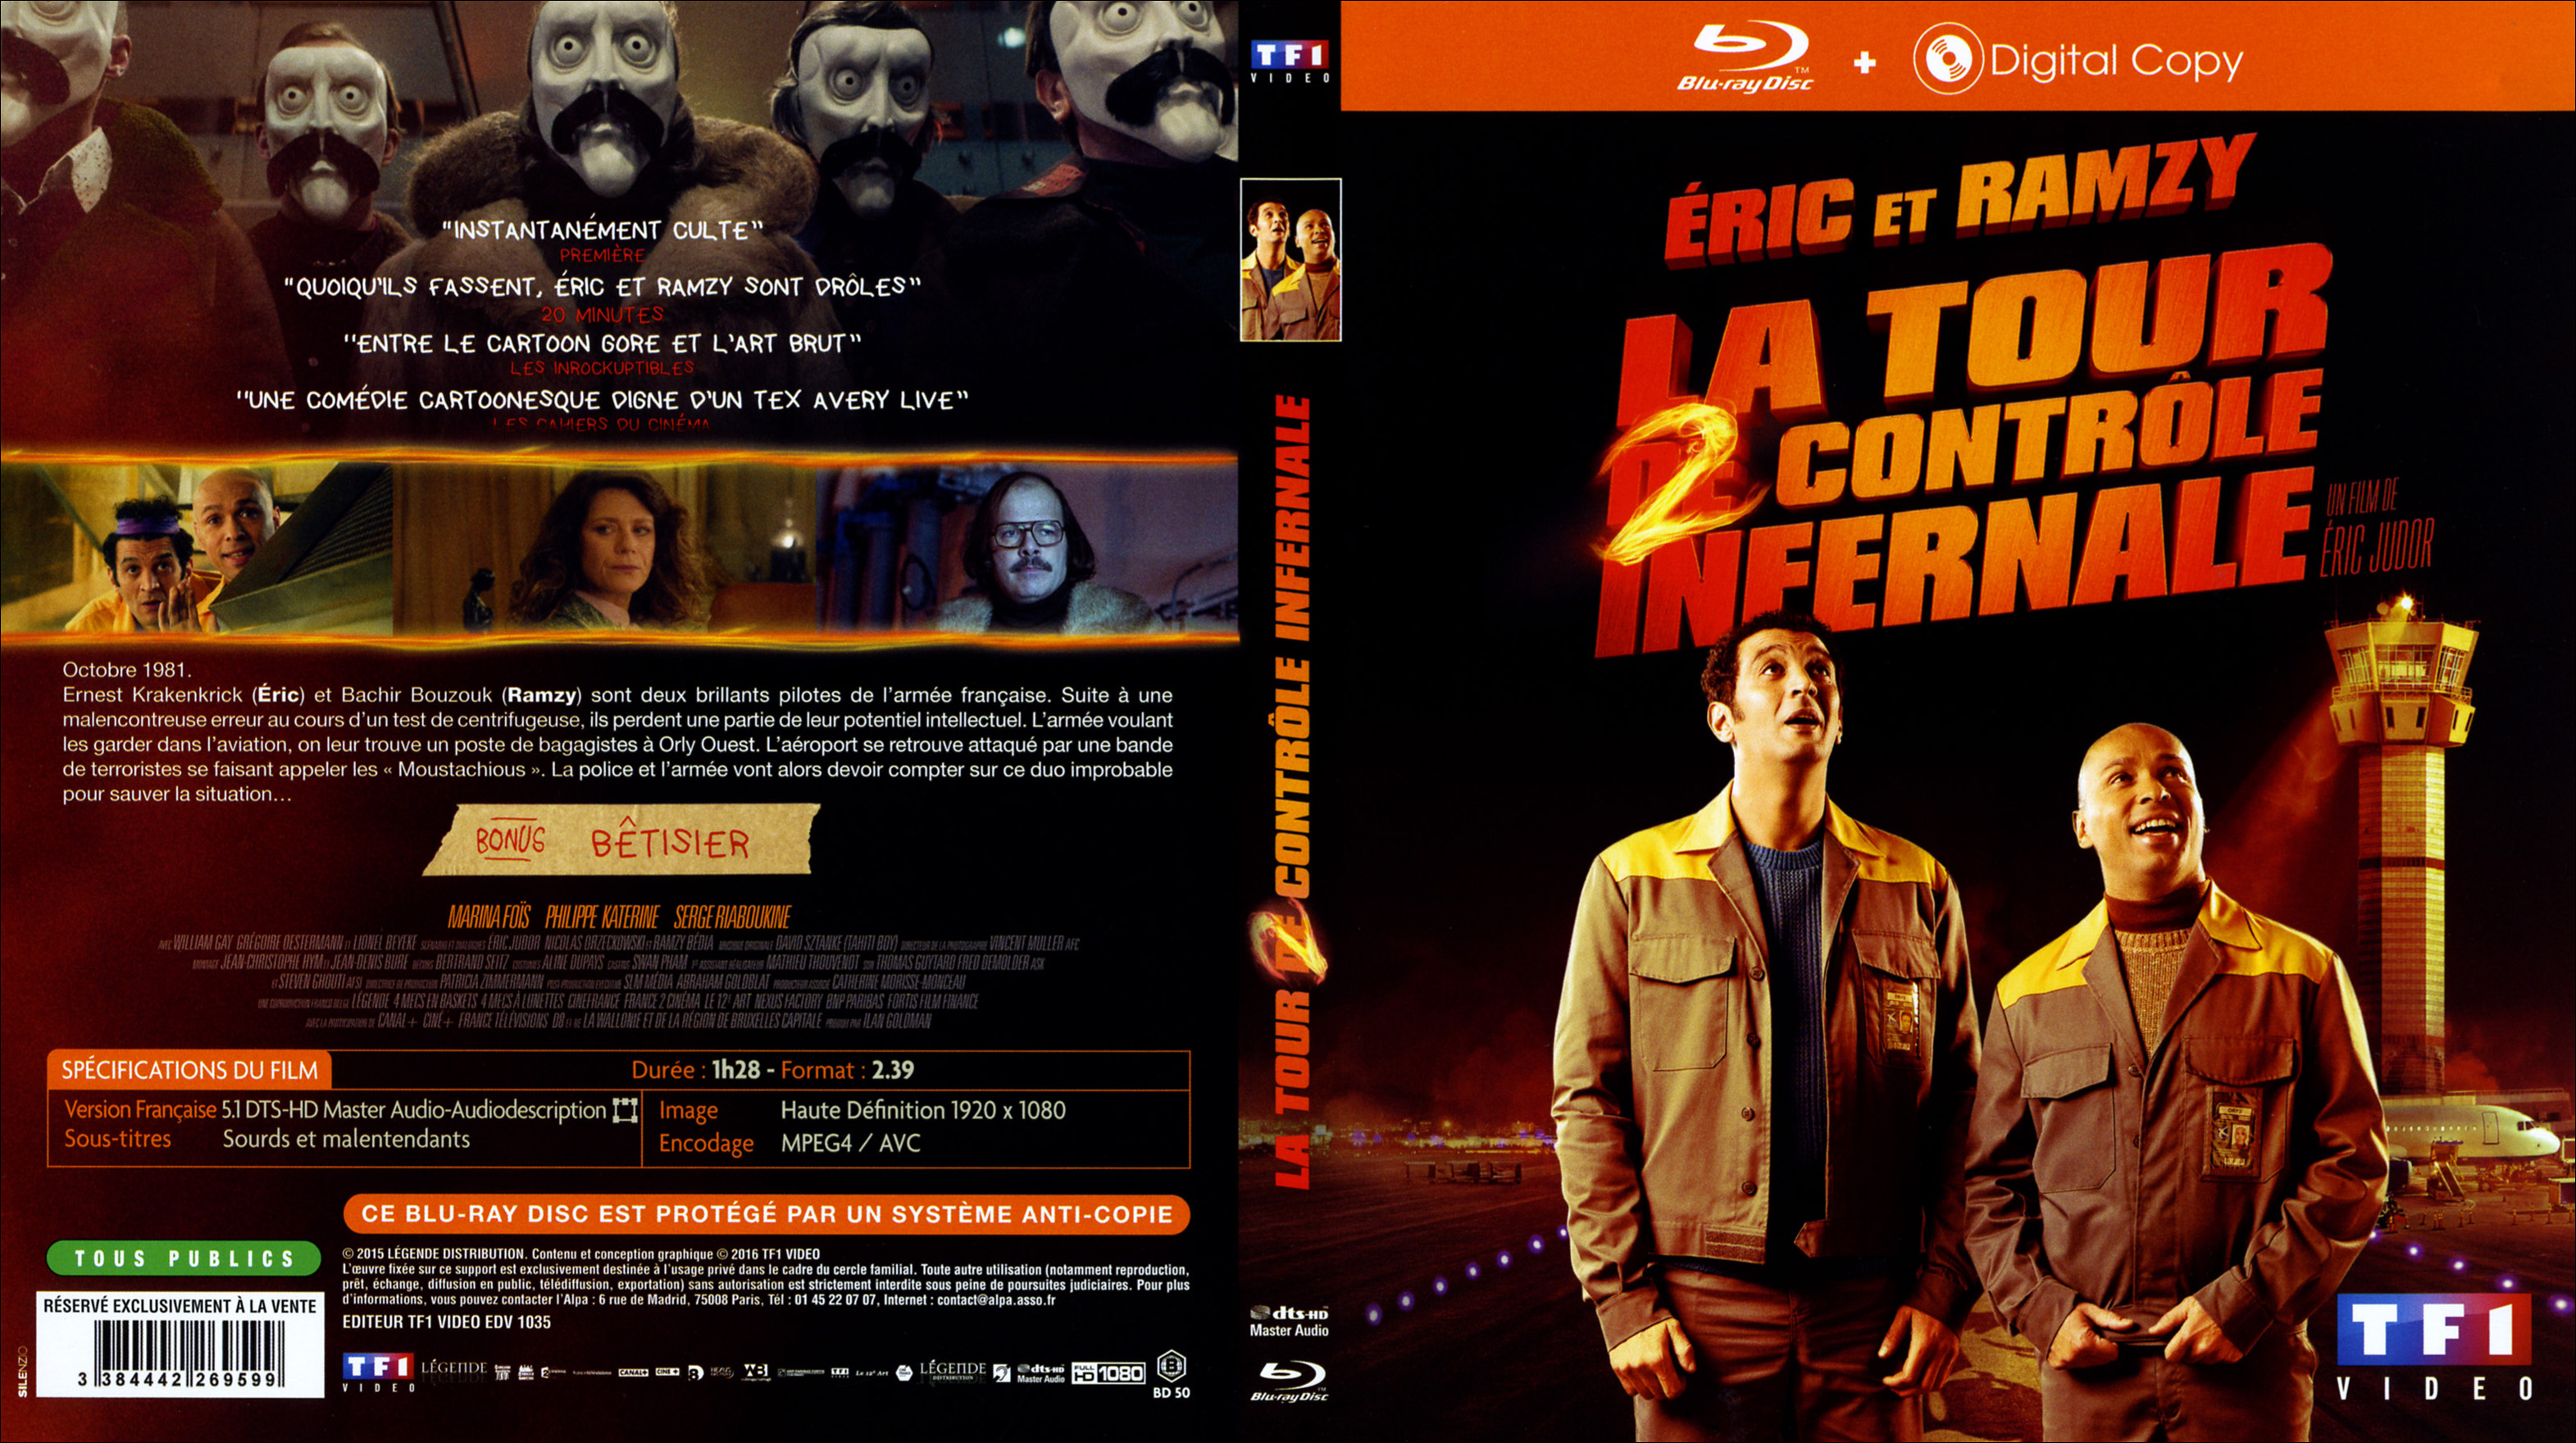 Jaquette DVD La tour 2 controle infernale (BLU-RAY)